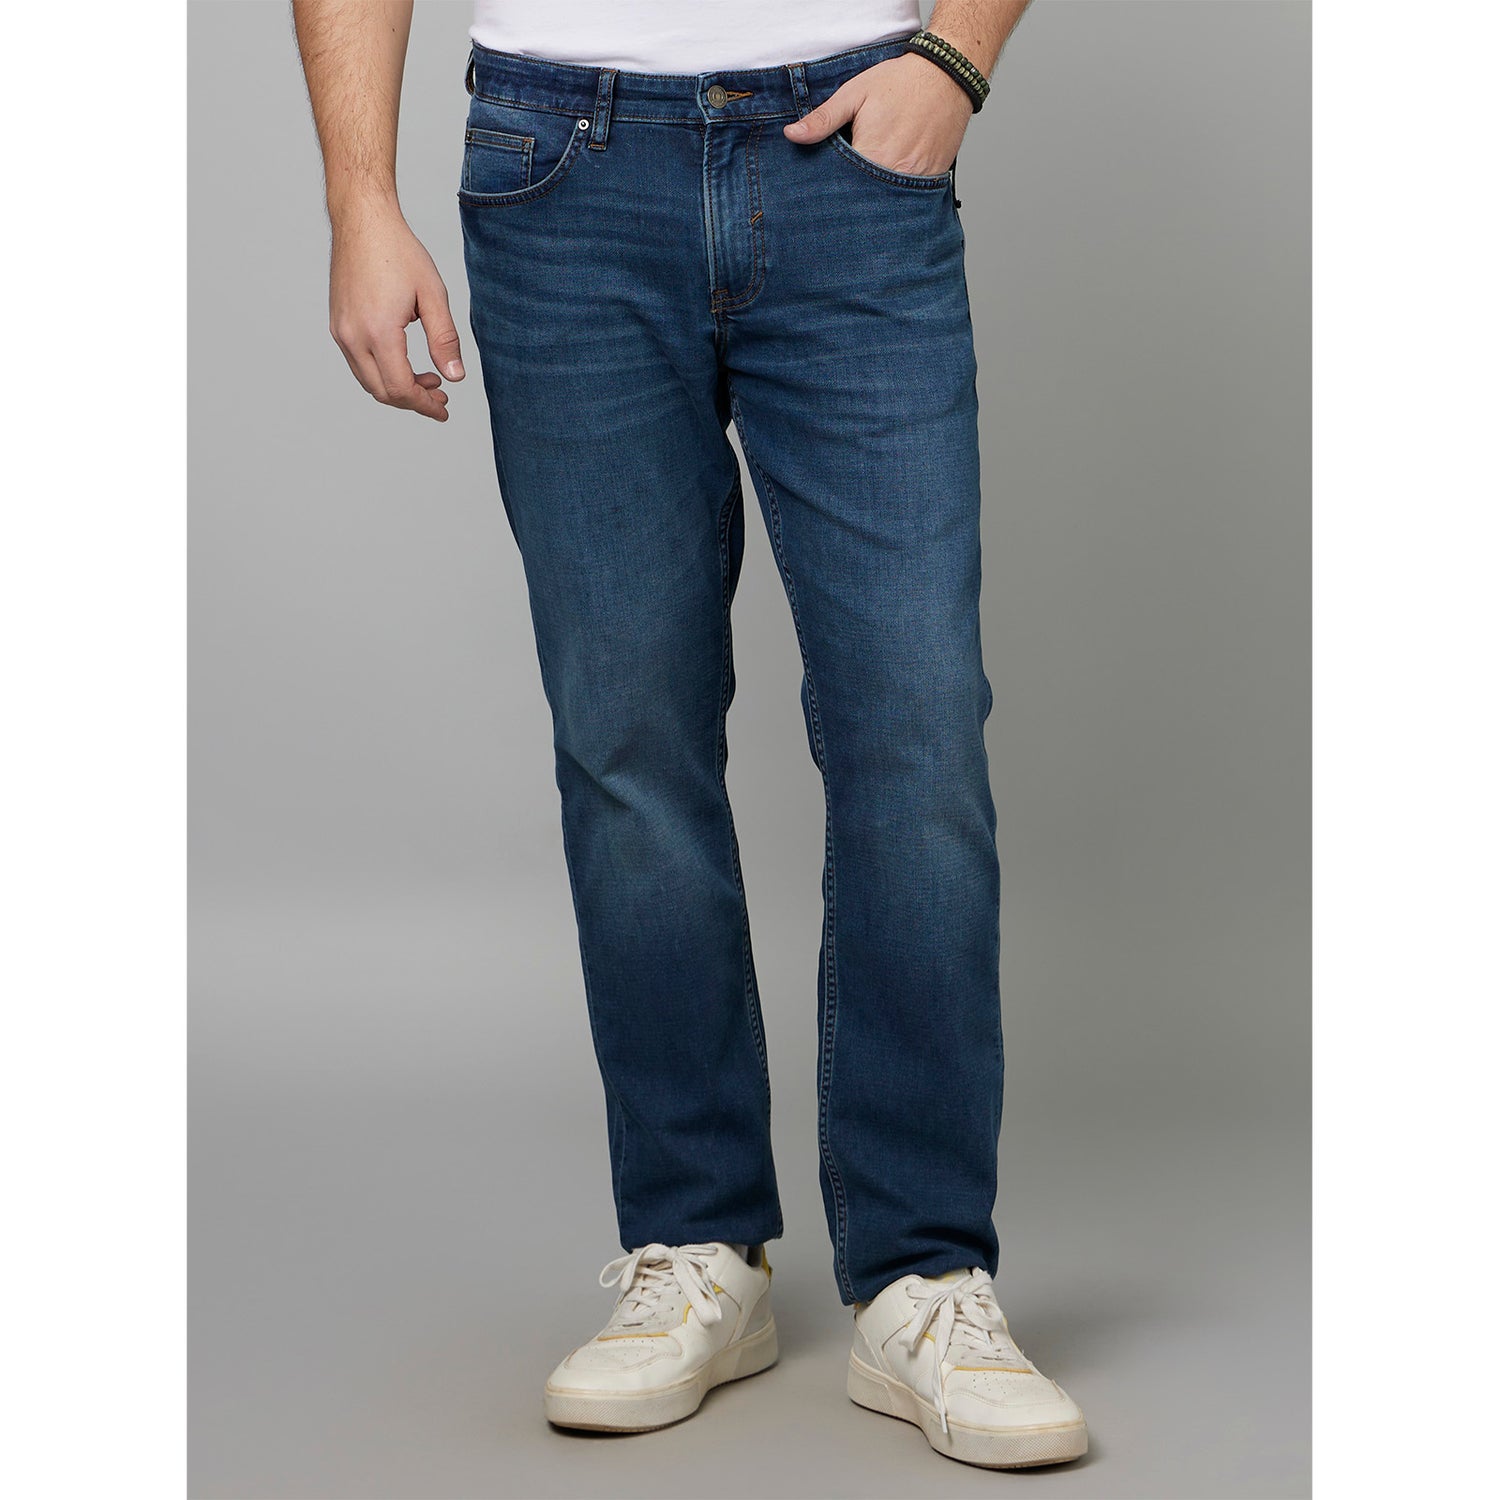 Blue Jean Stretchable Cotton Jeans (FOKLO15)